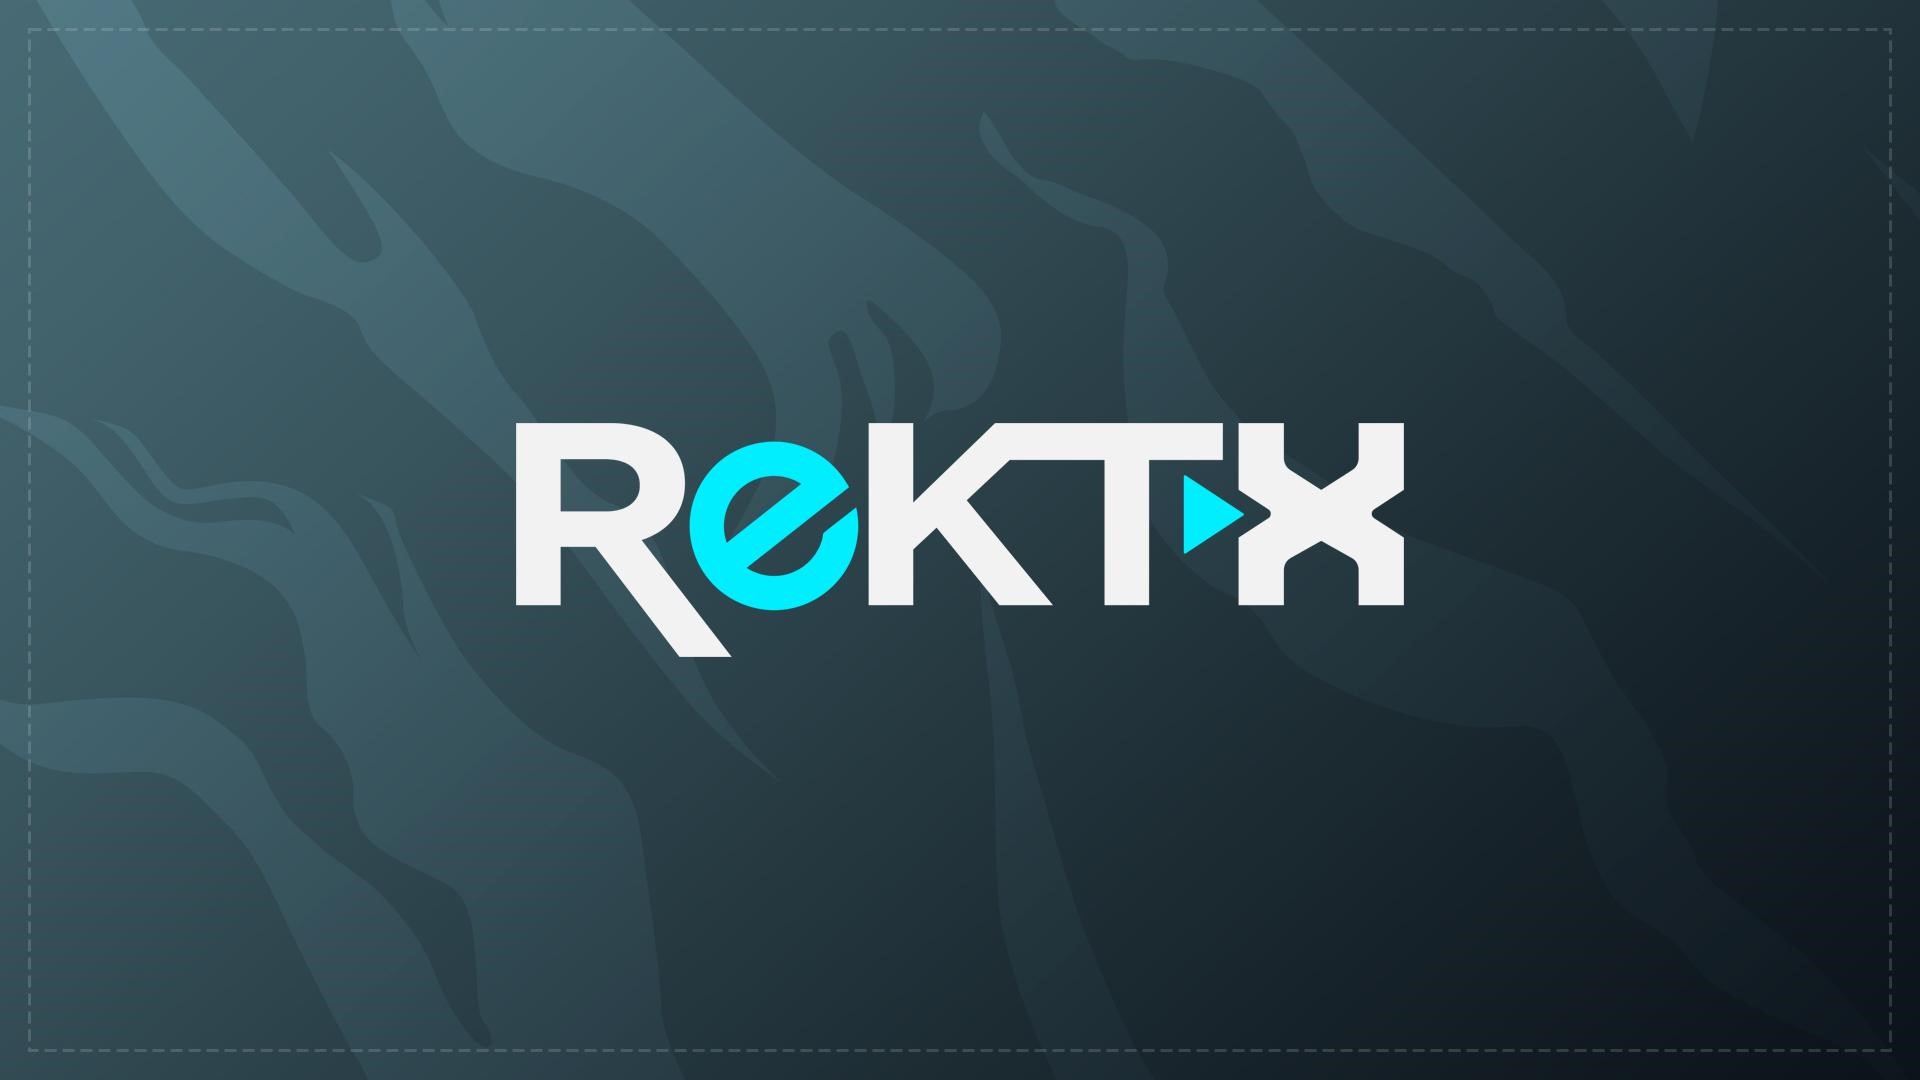 rektx logo.jpg